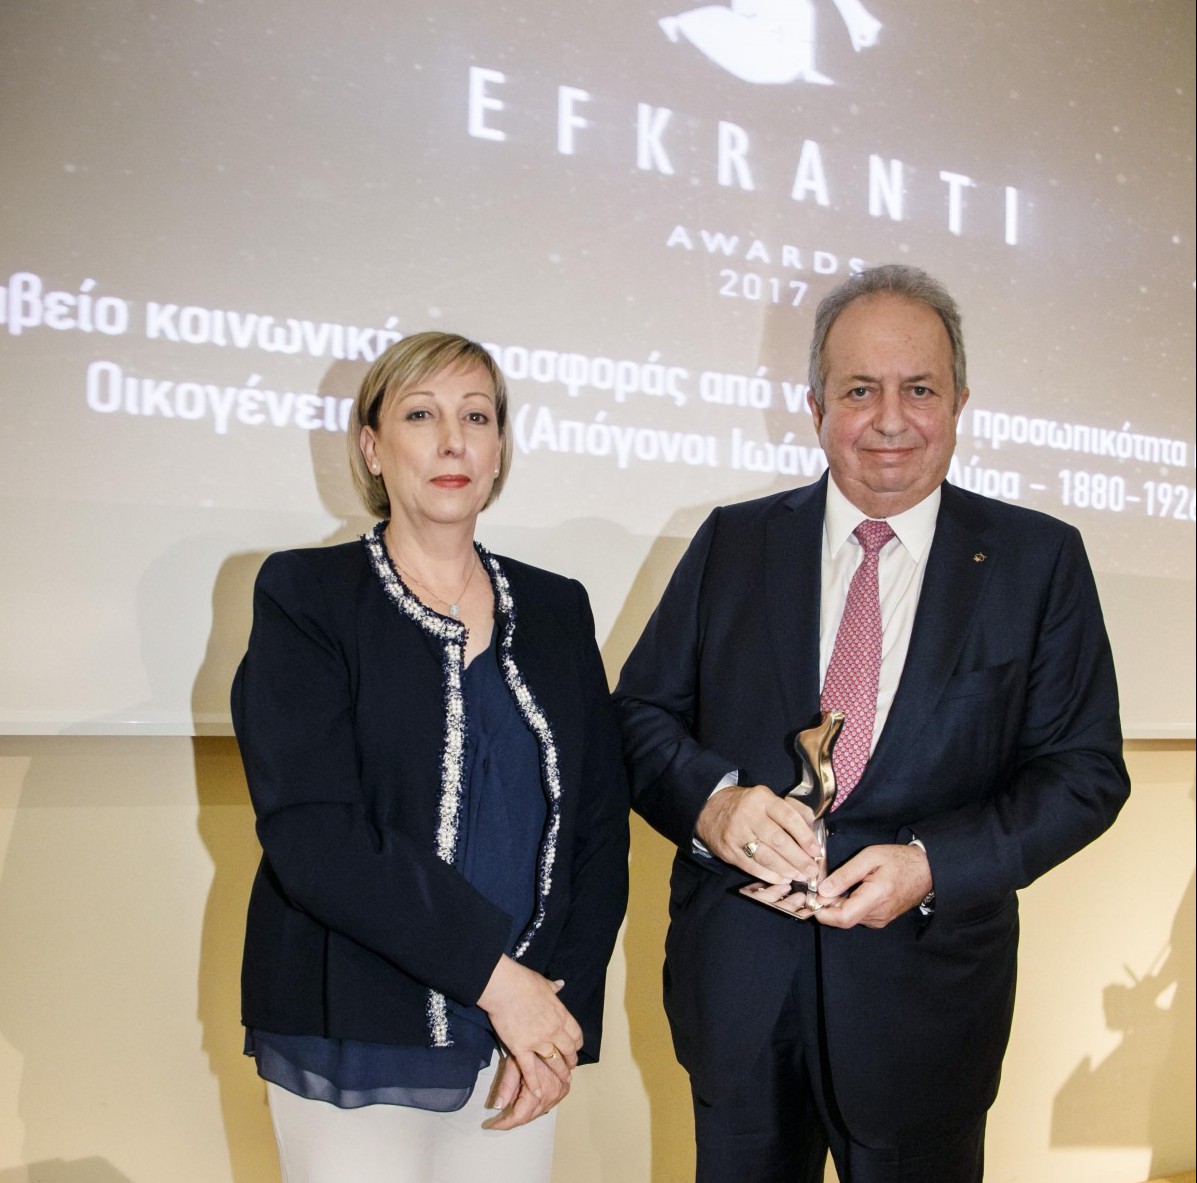 Ο κ. Ιωάννης Μάρκου Λύρας, εκ μέρους των οικογενειών Μάρκου και Κωνσταντίνου Λύρα, παραλαμβάνει το βραβείο από την κα Μαίρη Κρέστα, General Manager στην Ελλάδα της Tototheo Maritime